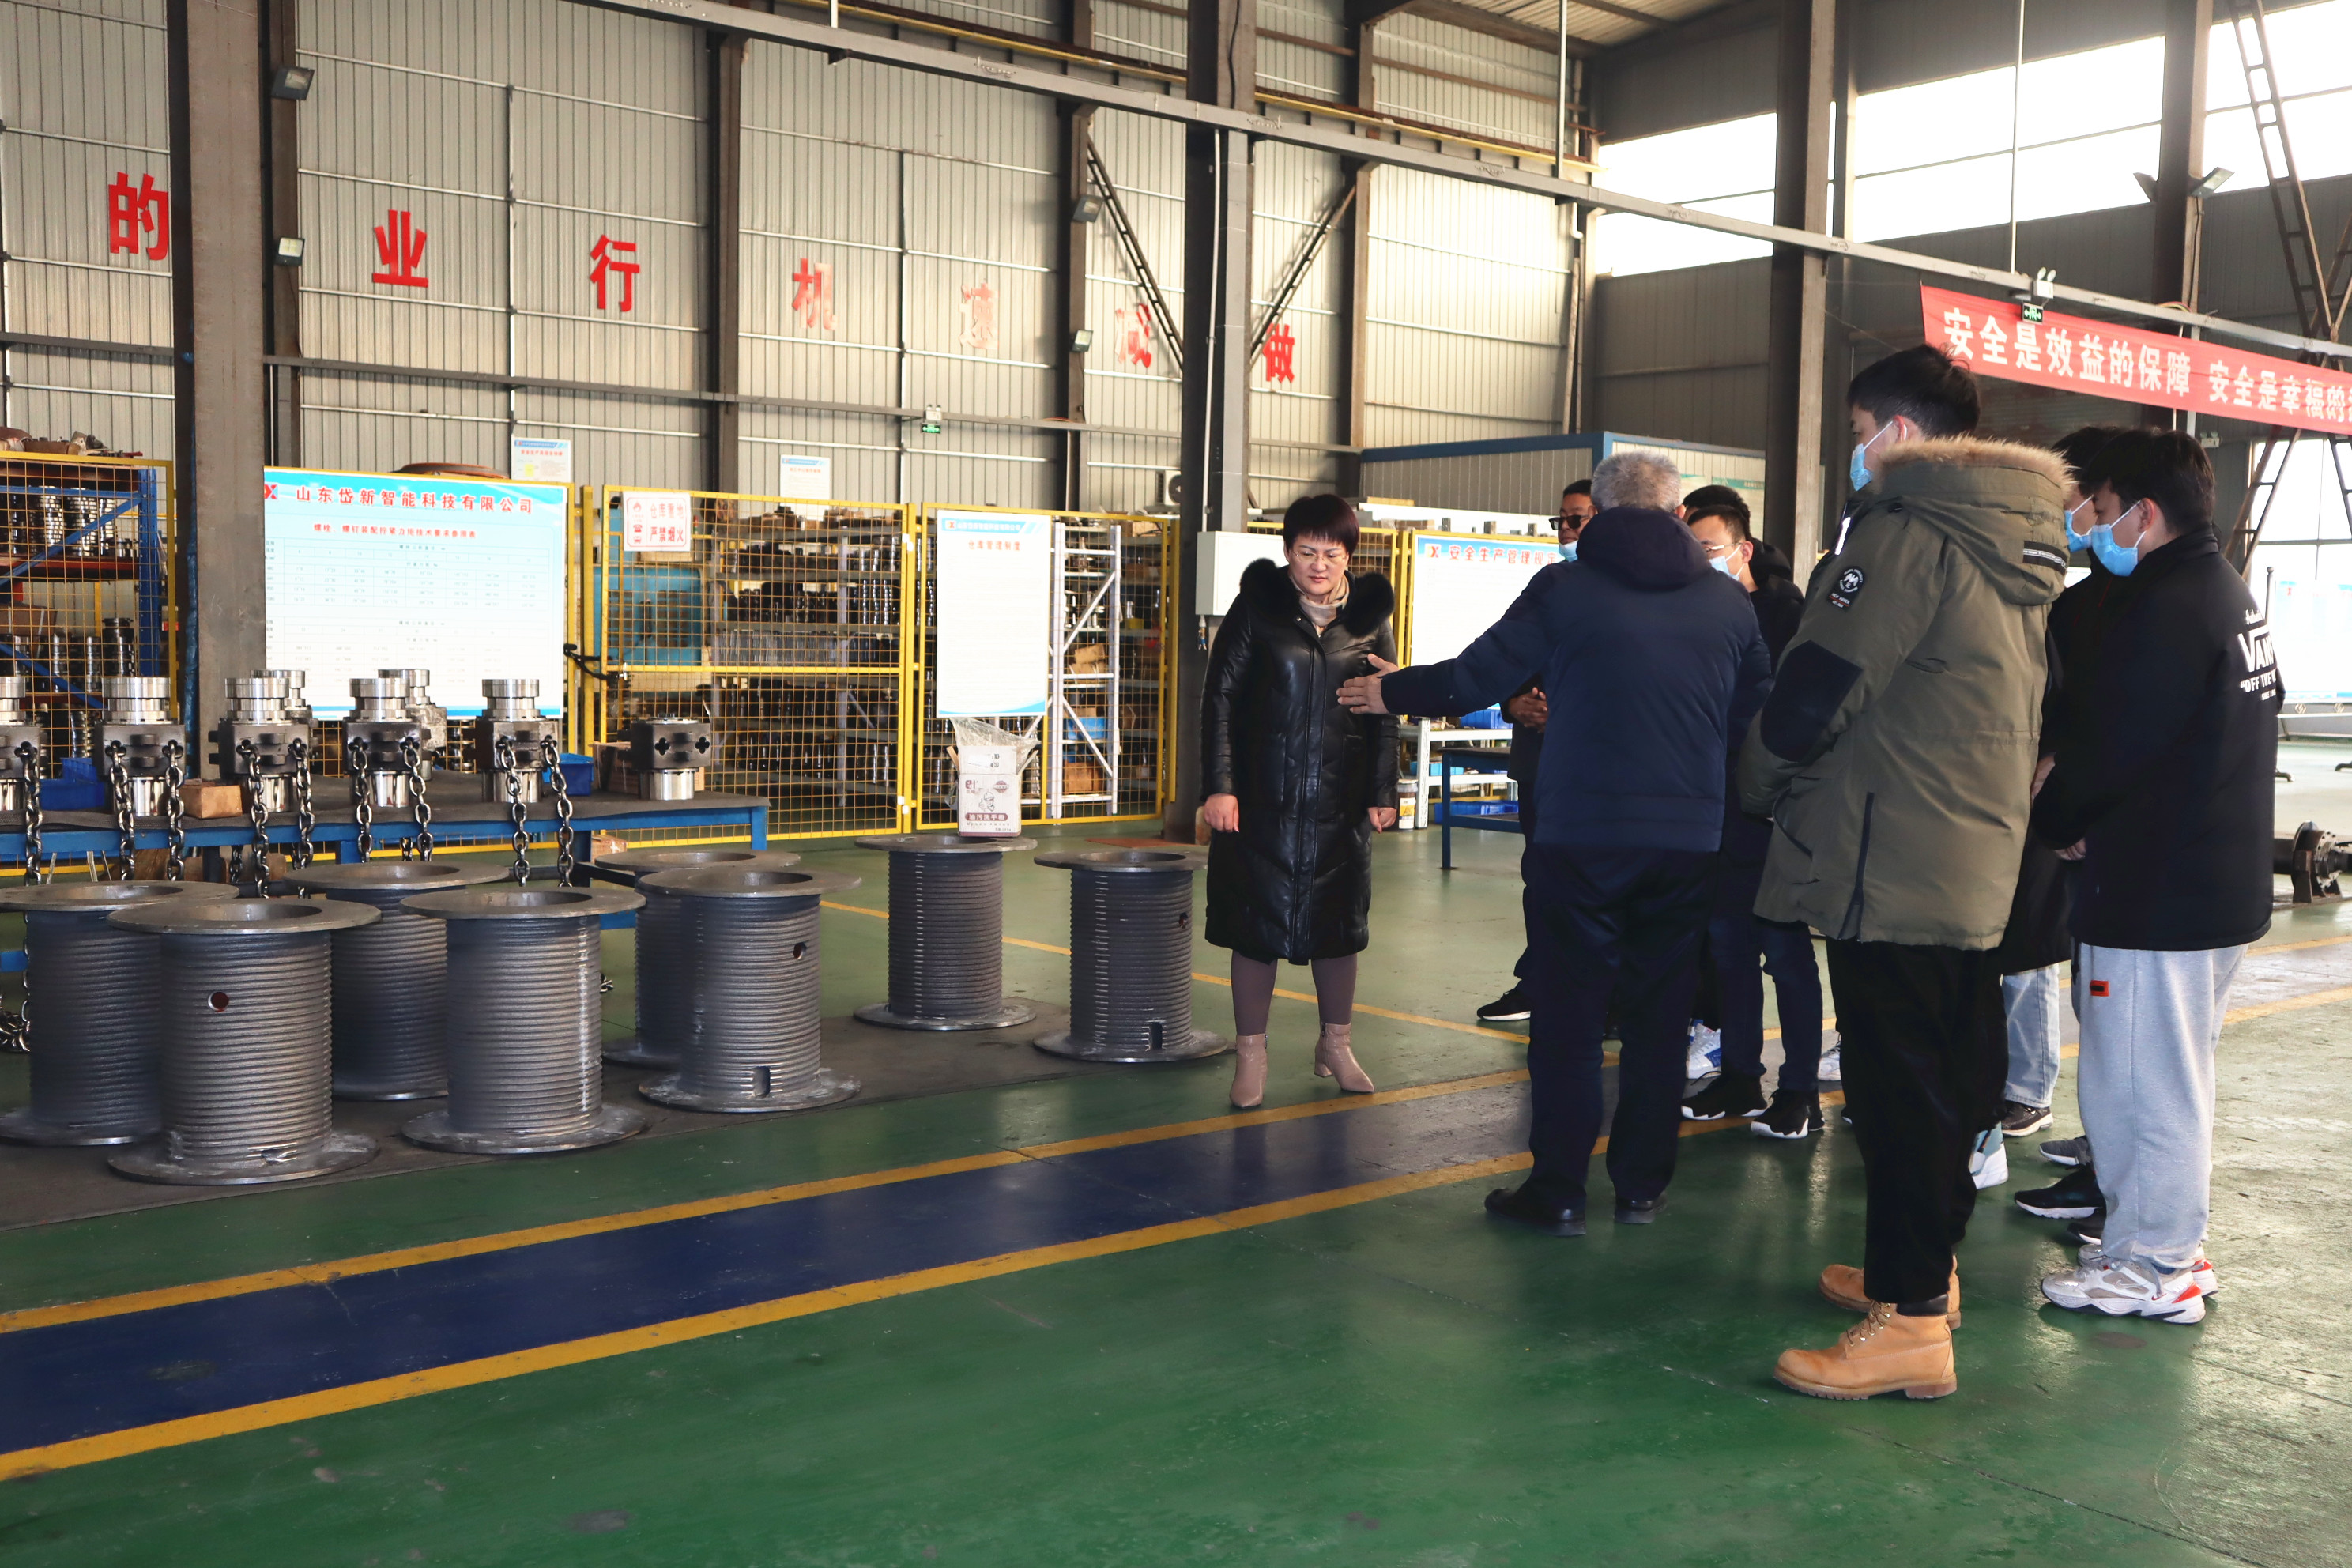 Аспиранты Шаньдунского университета науки и технологий посетили наш завод для стажировки.